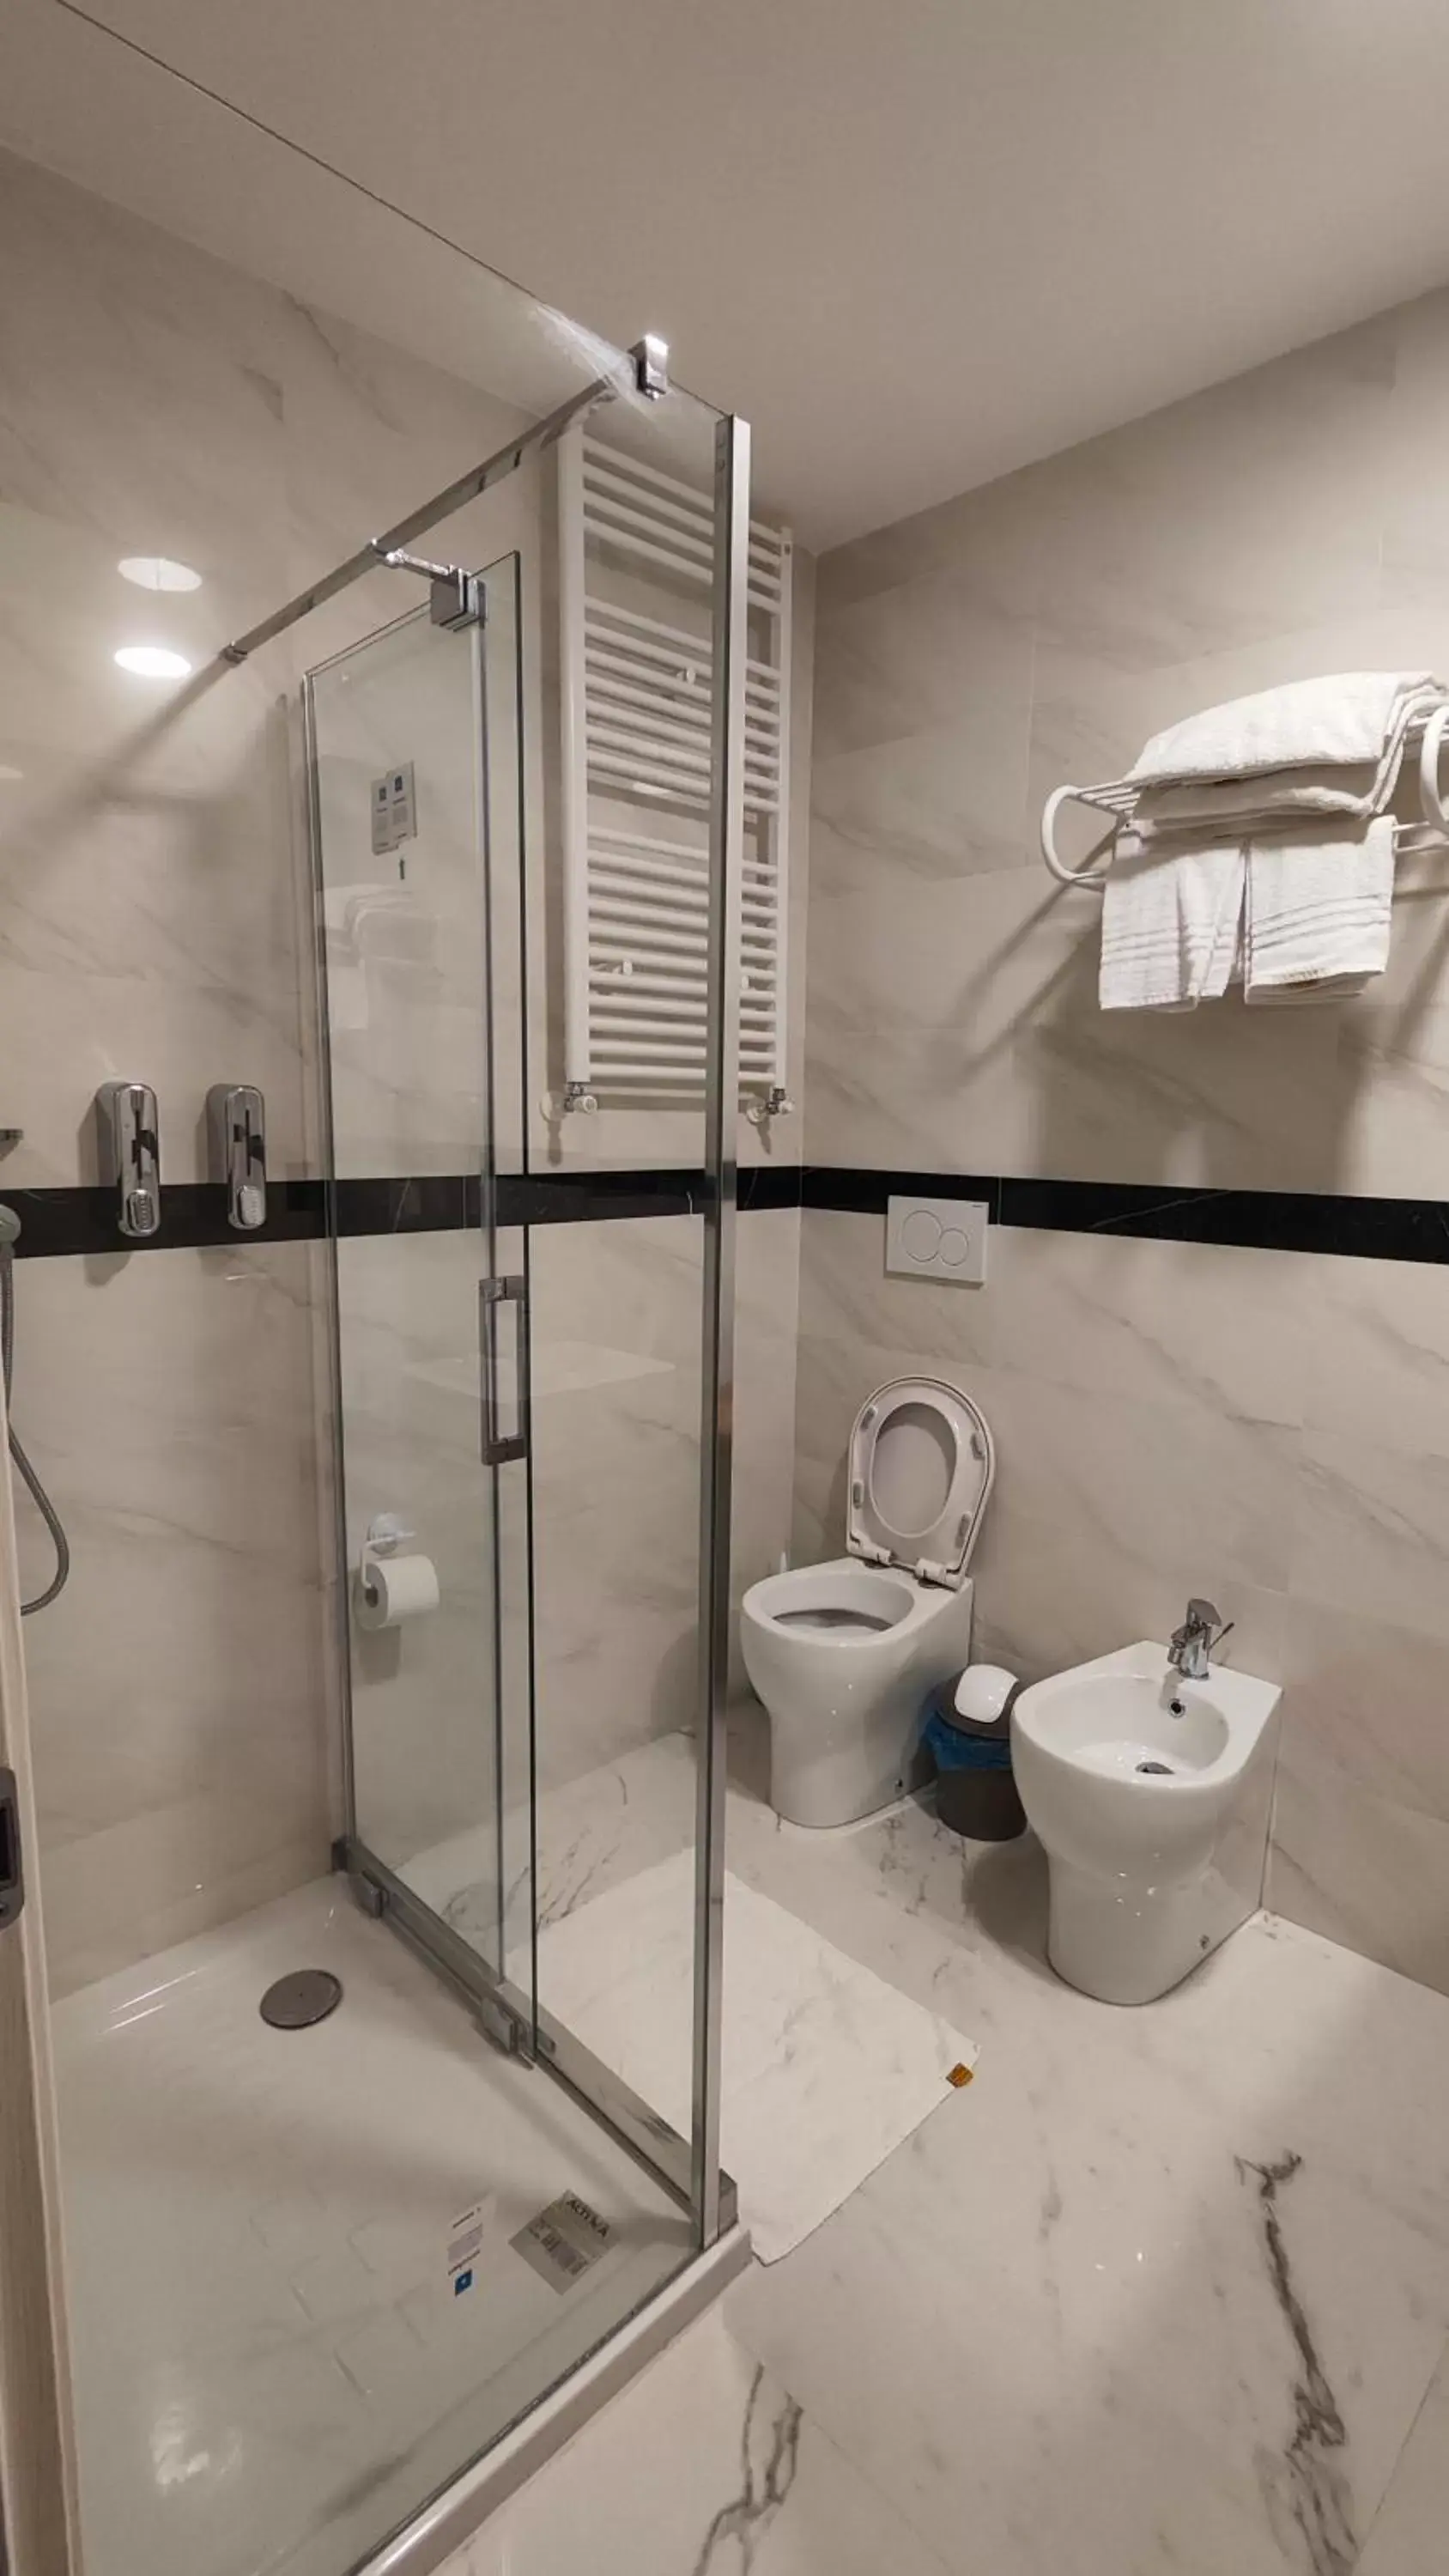 Shower, Bathroom in 999 Hotel - B&B Giglio